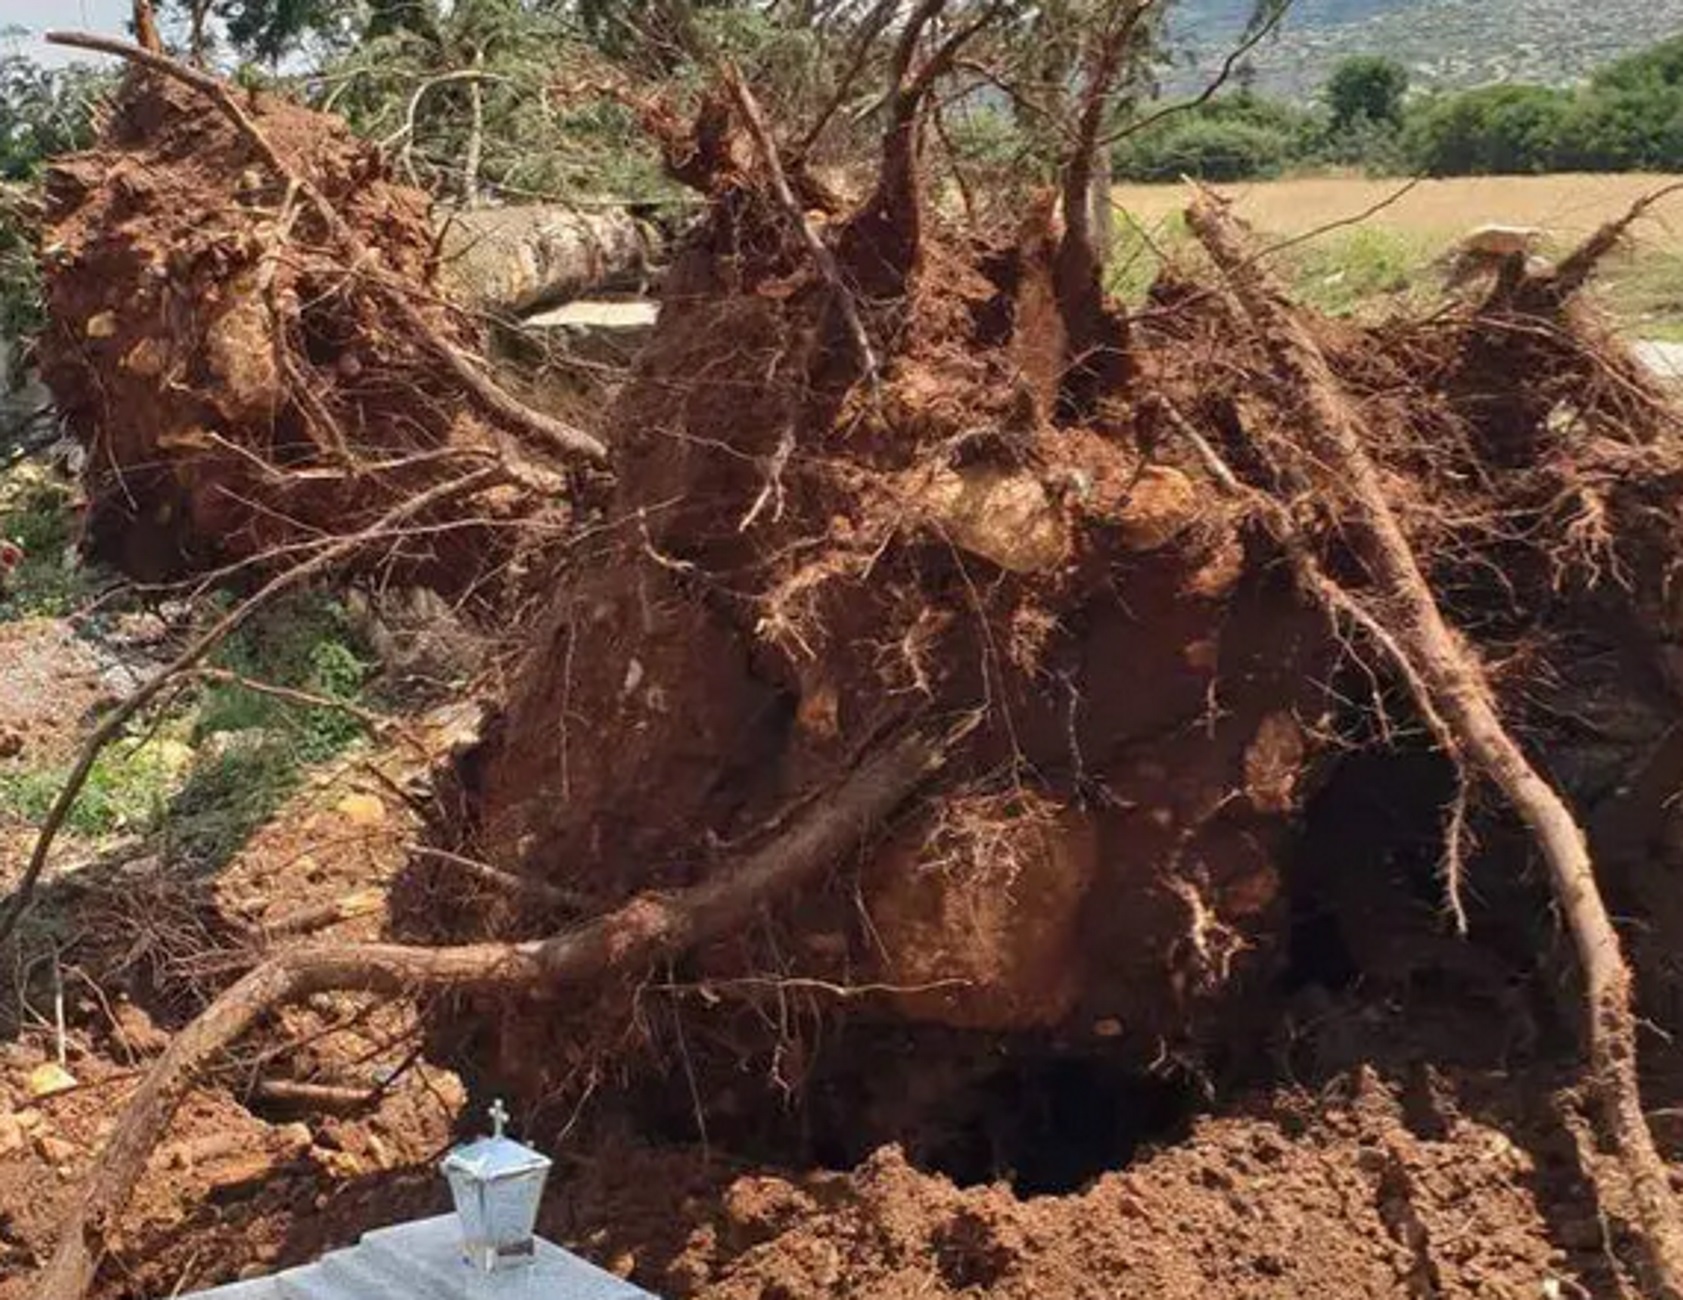 Σέρρες: Ξεριζώθηκαν ολόκληρα δέντρα στην κακοκαιρία εξπρές – Οι εικόνες που προκαλούν απελπισία